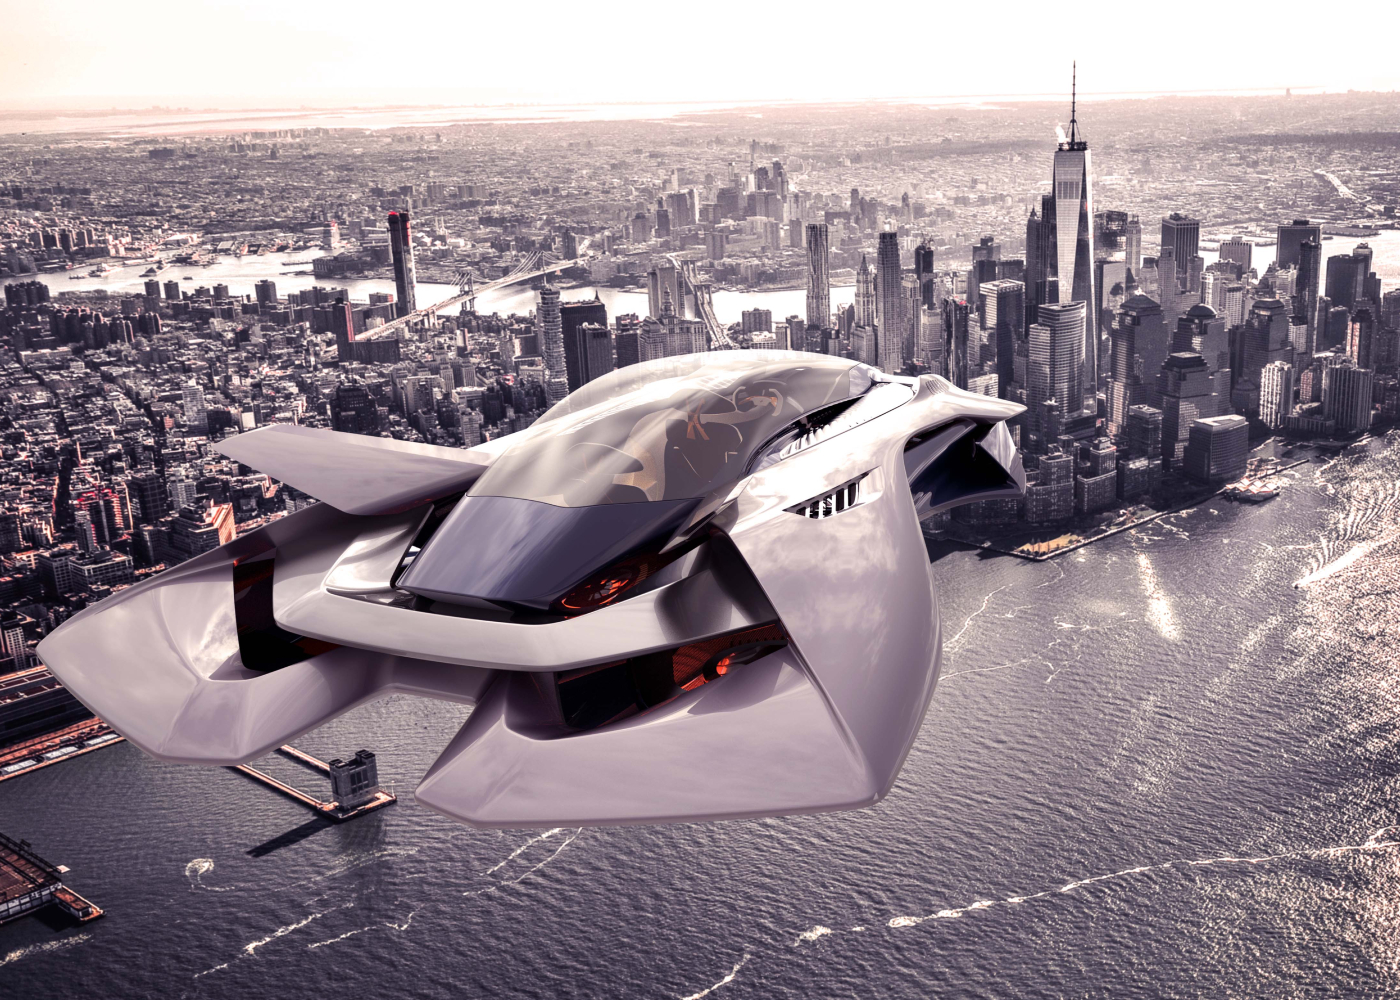 而作为面向城市空中交通和未来出行的新型交通工具,evtol飞行器正日益